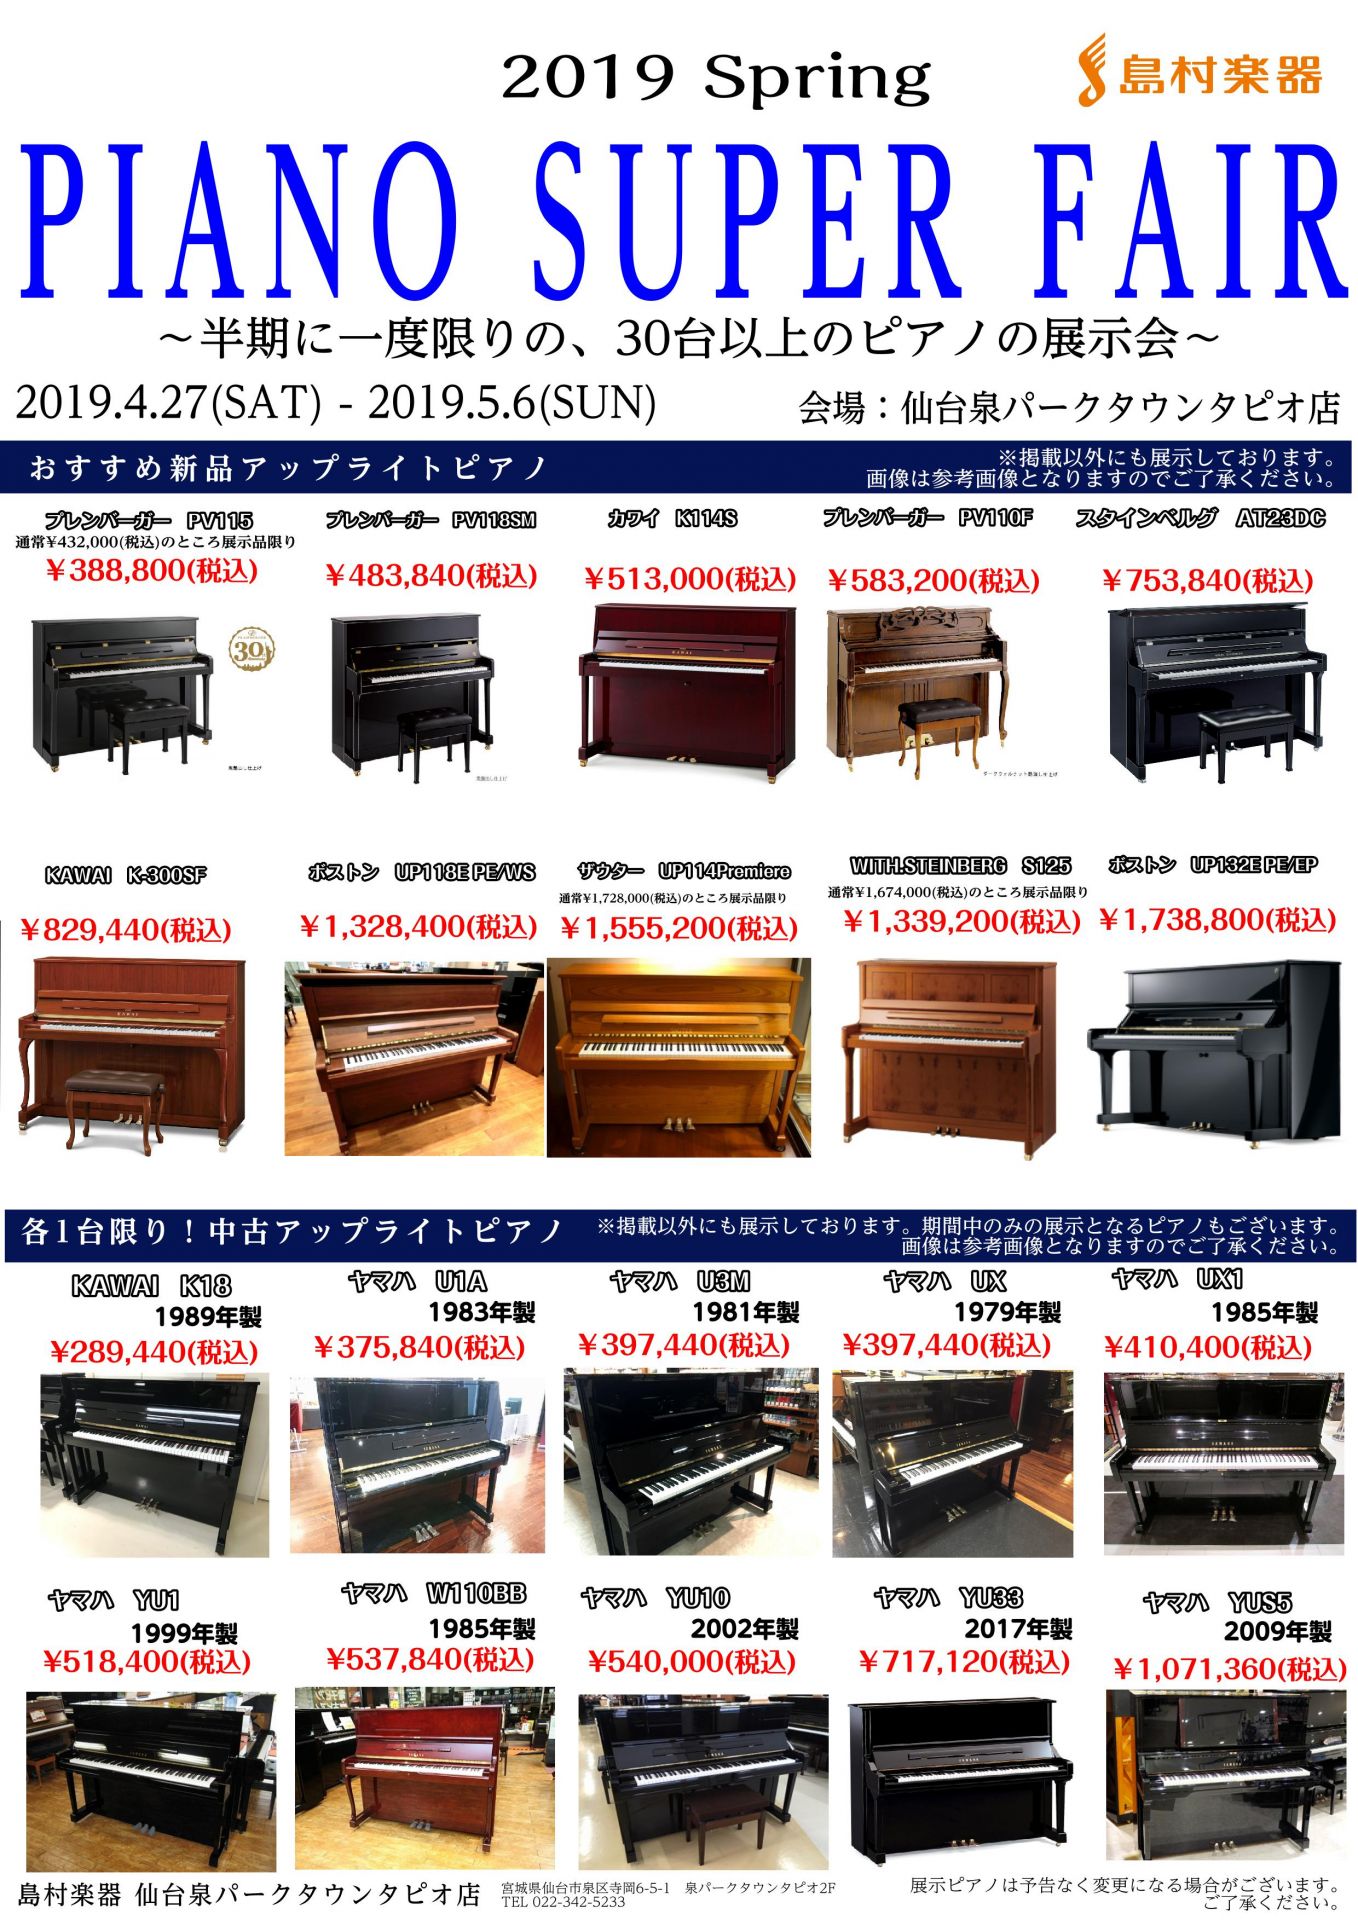 *PIANO　SUPER　FAIR開催中 **半期に一度限りの30台以上のピアノ展示会 2019/04/27(土)〜2019/05/06(月)の10日間、平成から令和にかけたピアノのフェアを開催します。 期間中は通常展示の無い中古のアップライトピアノ&グランドピアノ20台が店頭に並びます。 フェア期 […]